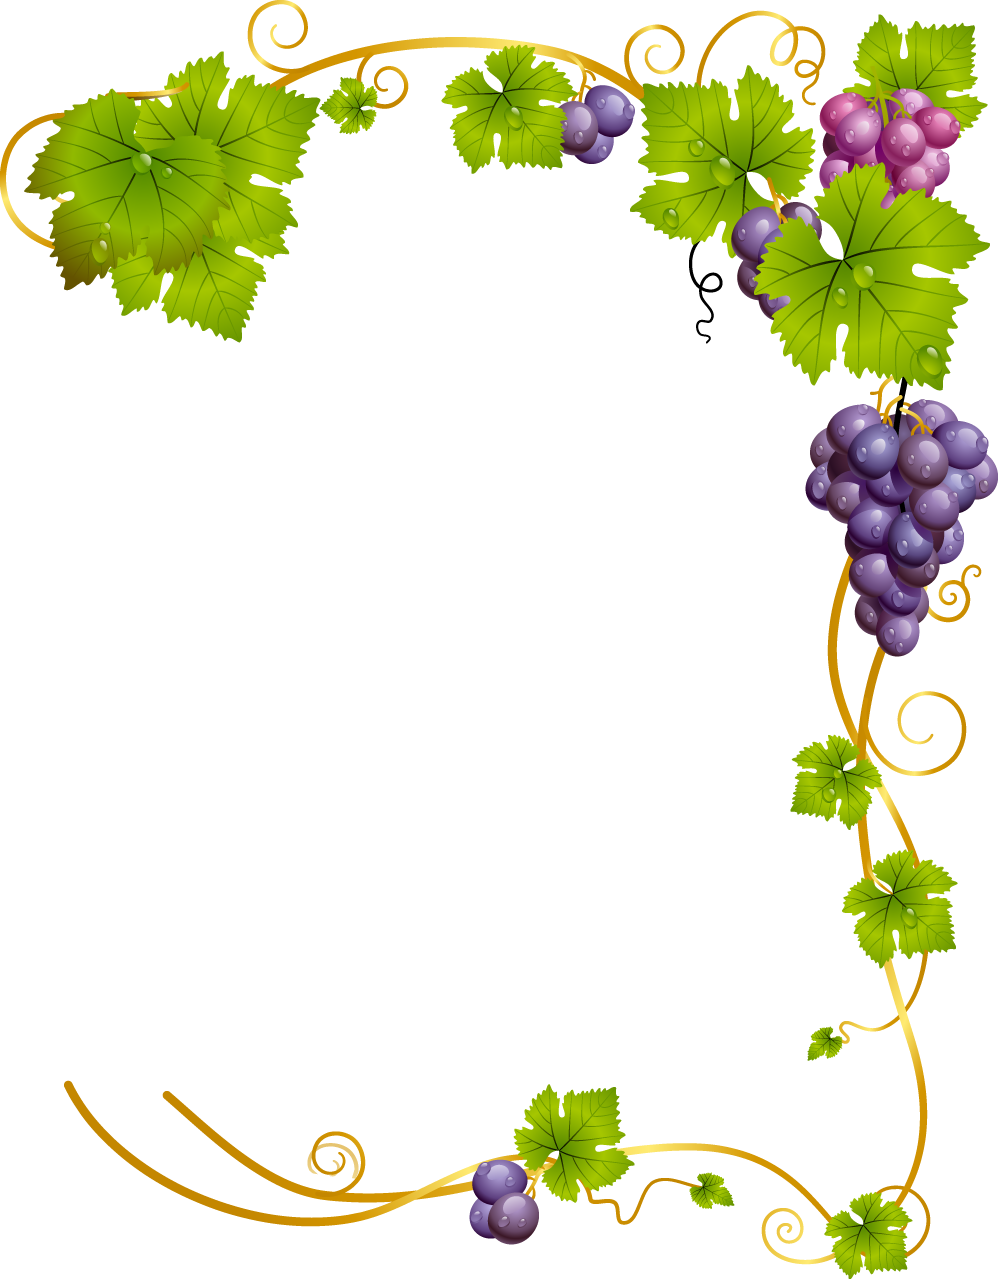 grape clipart watercolor